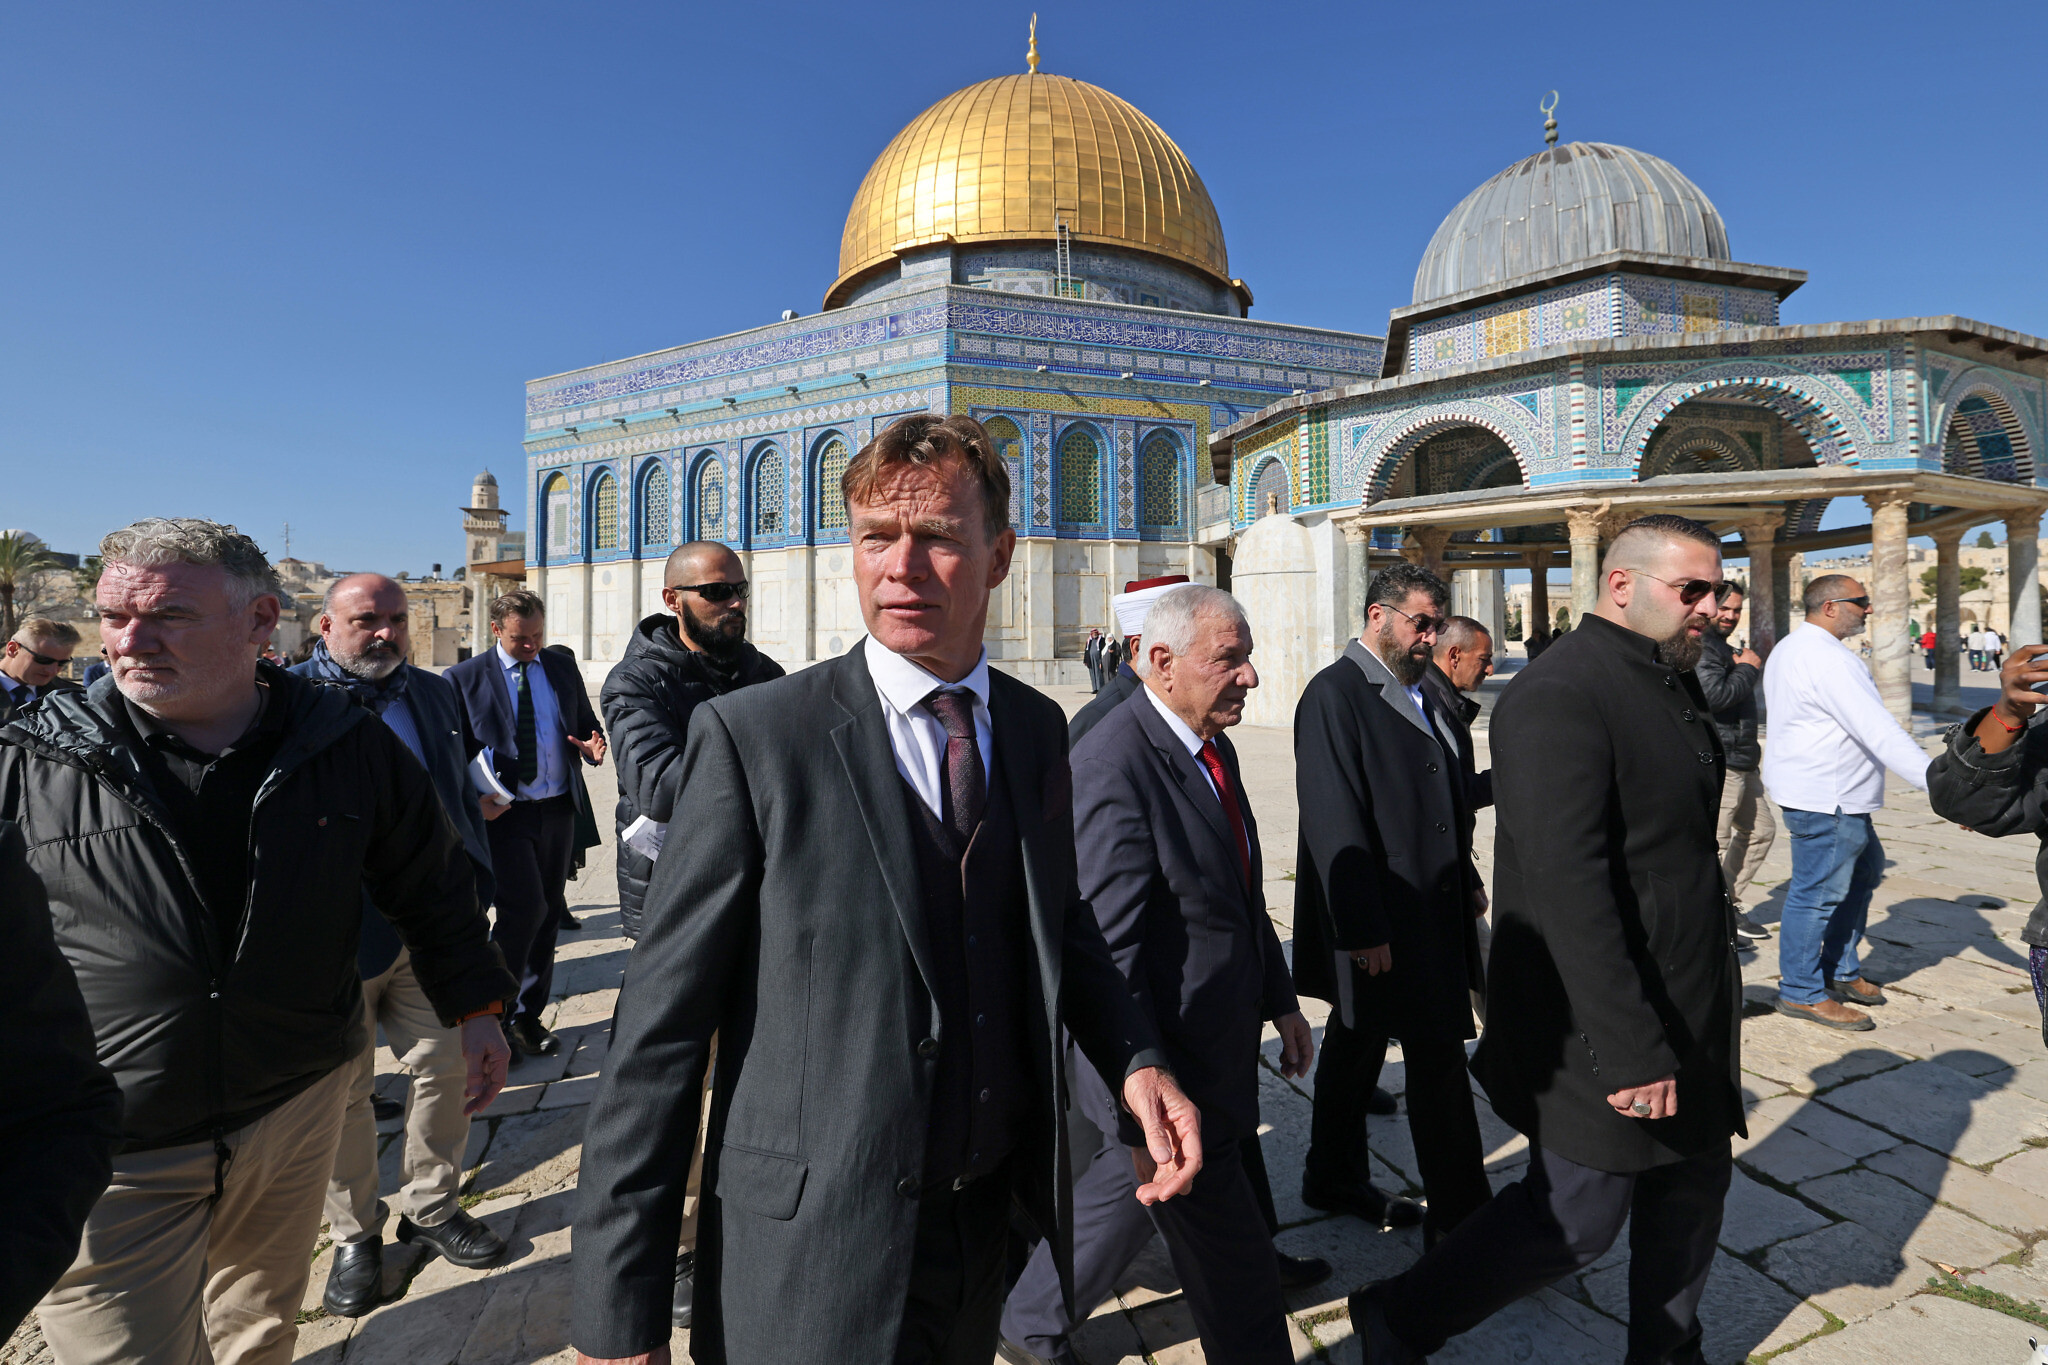 Le chef de la mission de l'Union européenne auprès de la Cisjordanie et de la bande de Gaza, Sven Kühn von Burgsdorff (C), accompagné du directeur général du Waqf (dotation) islamique Azzam al-Khatib (à sa droite), visite l'enceinte de la mosquée Al-Aqsa au sommet du mont du Temple dans la Vieille Ville de Jérusalem, le 18 janvier 2023. (Crédit : AHMAD GHARABLI / AFP)